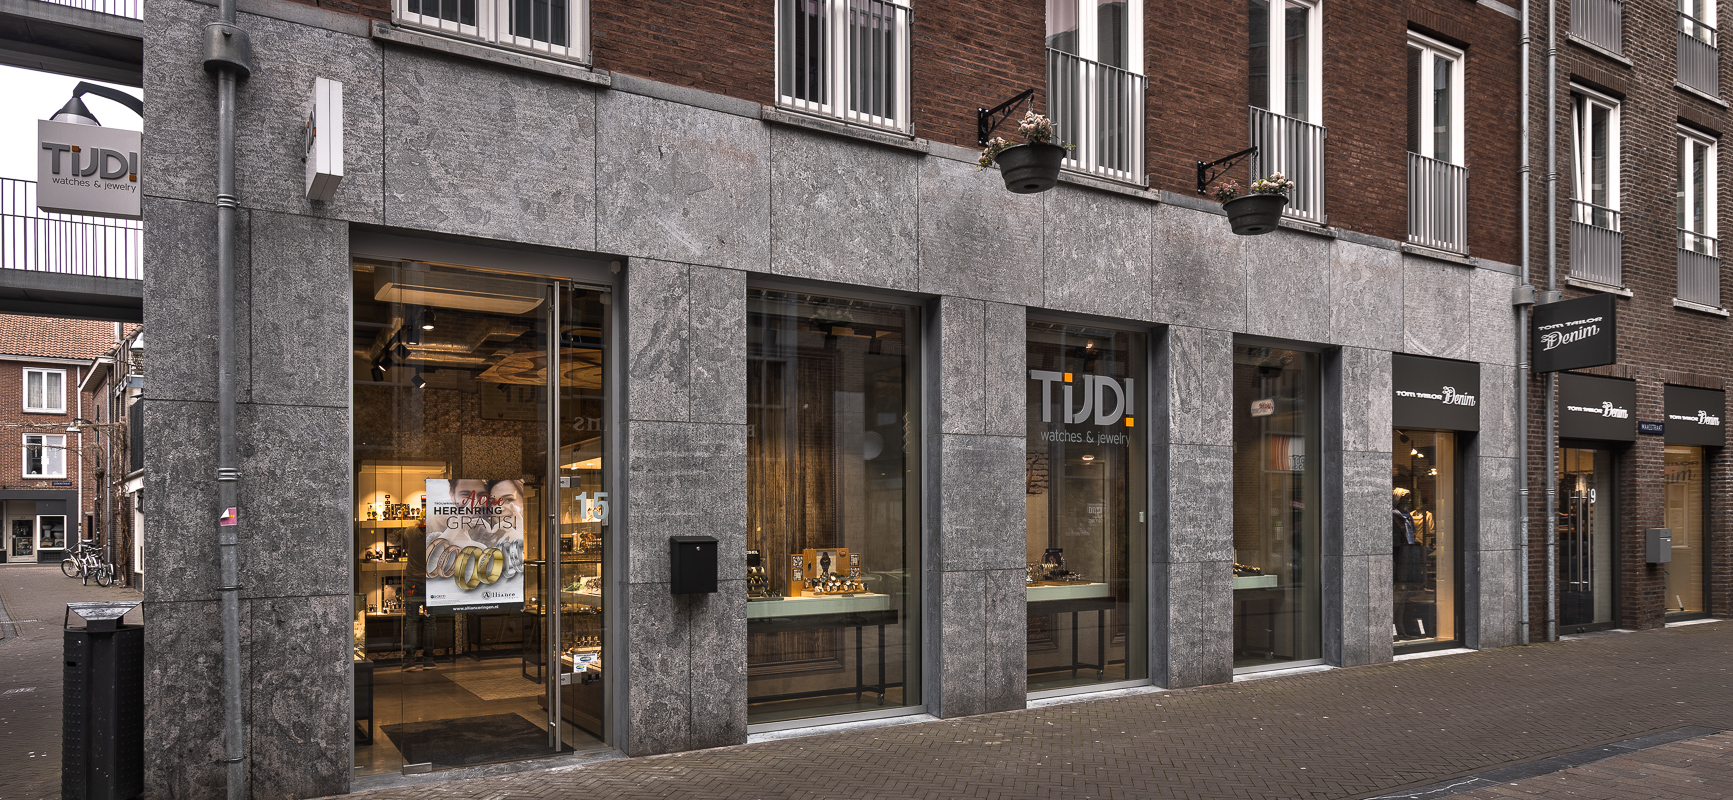 Tijd! Watches & Jewelry | Venlo (NL) - Jeweler